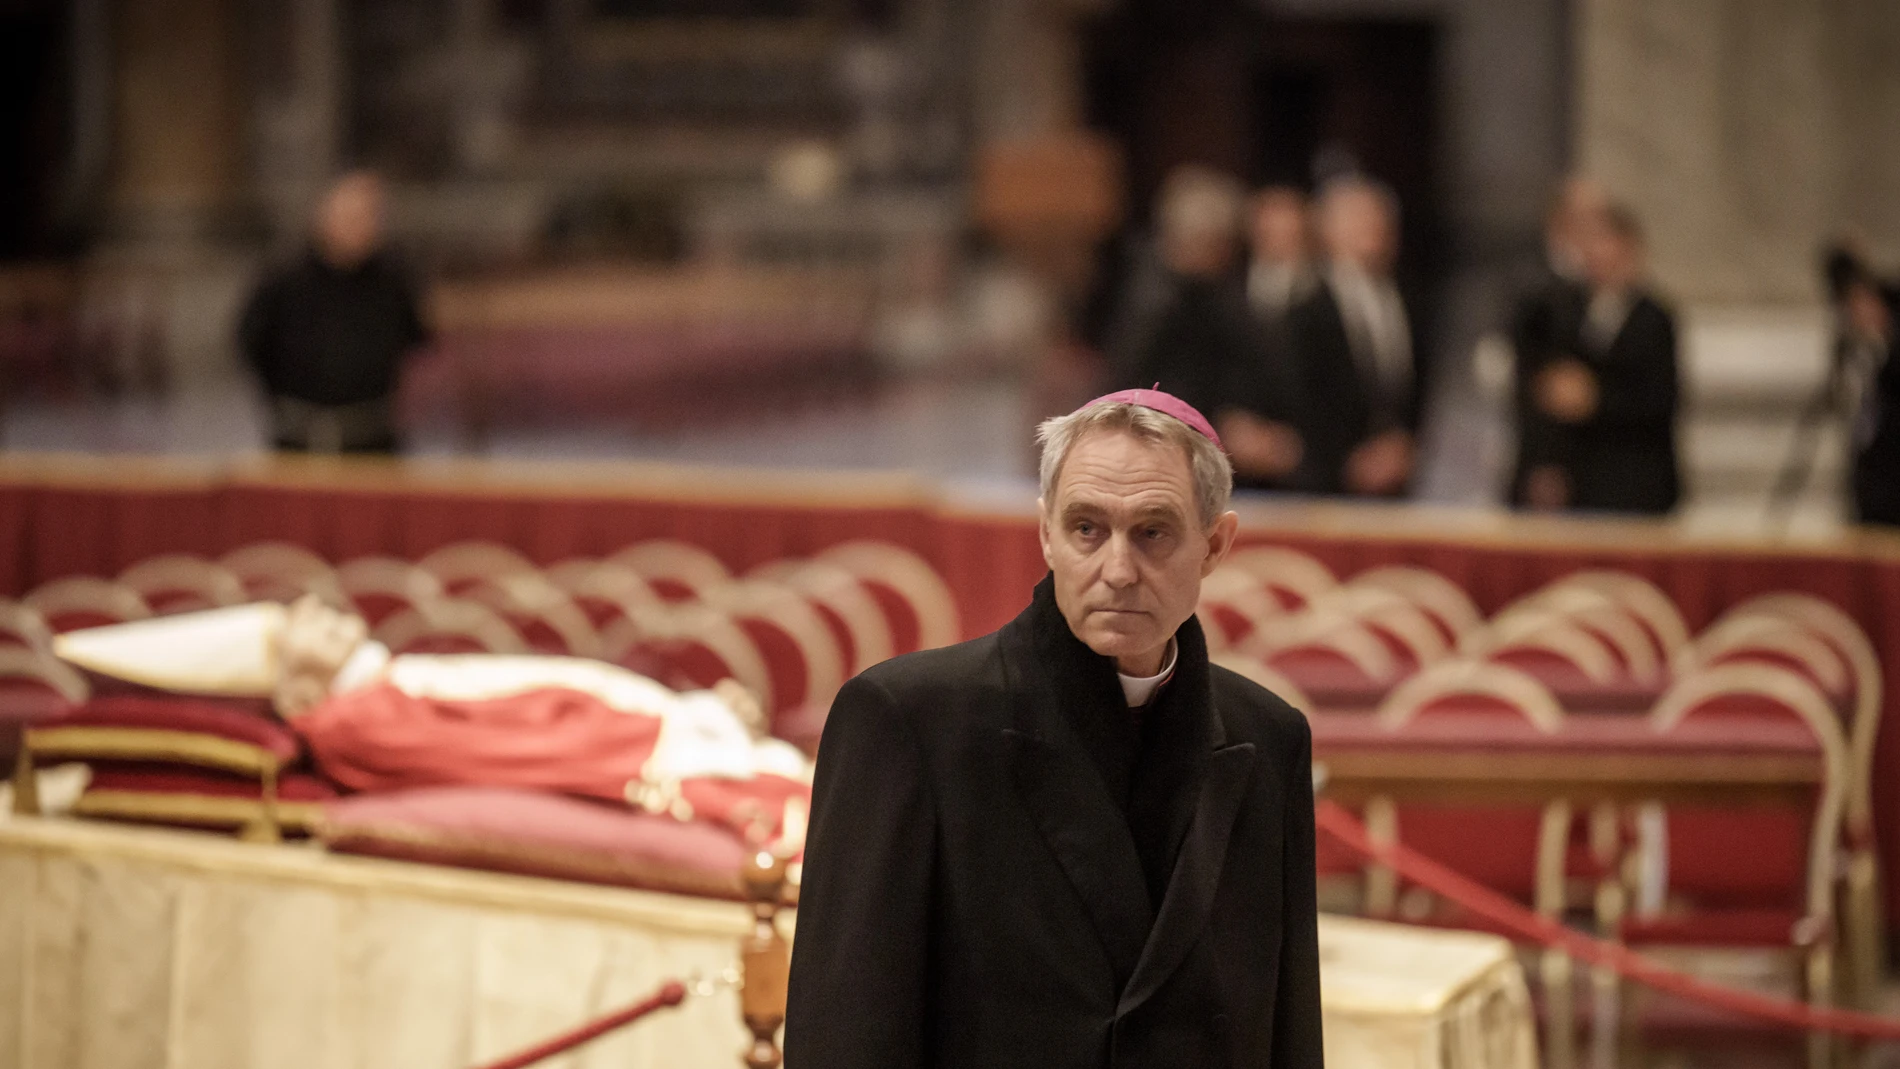 El arzobispo Georg Gänswein durante un acto en el Vaticano